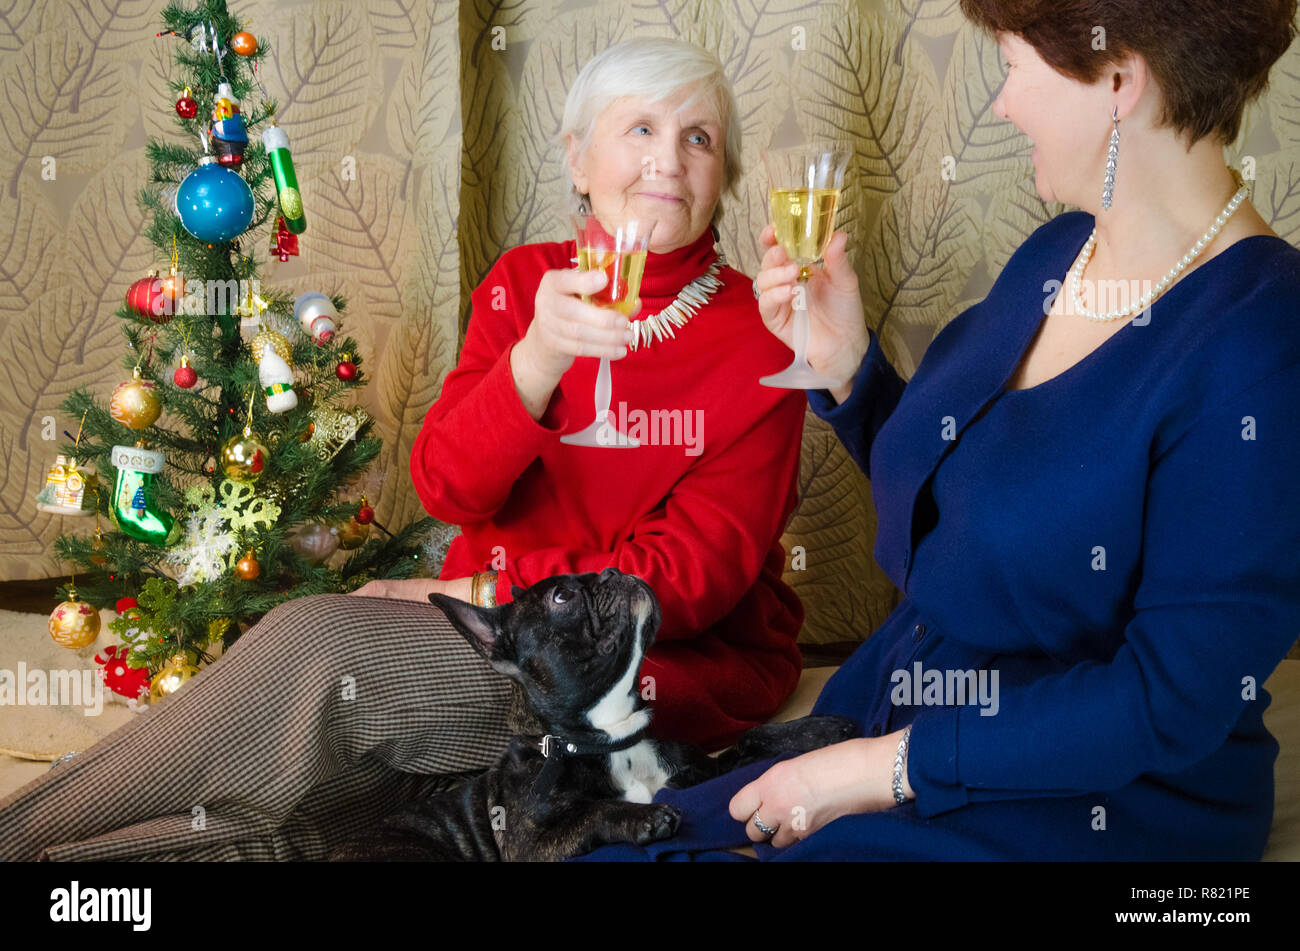 Familie Momente zur Weihnachtszeit. alte Frau lächeln. Großmutter und ihrer Tochter sitzen in der Nähe von Weihnachten Baum. Geist des Neuen Jahres. Clink Gläser mit Champagner. Stockfoto